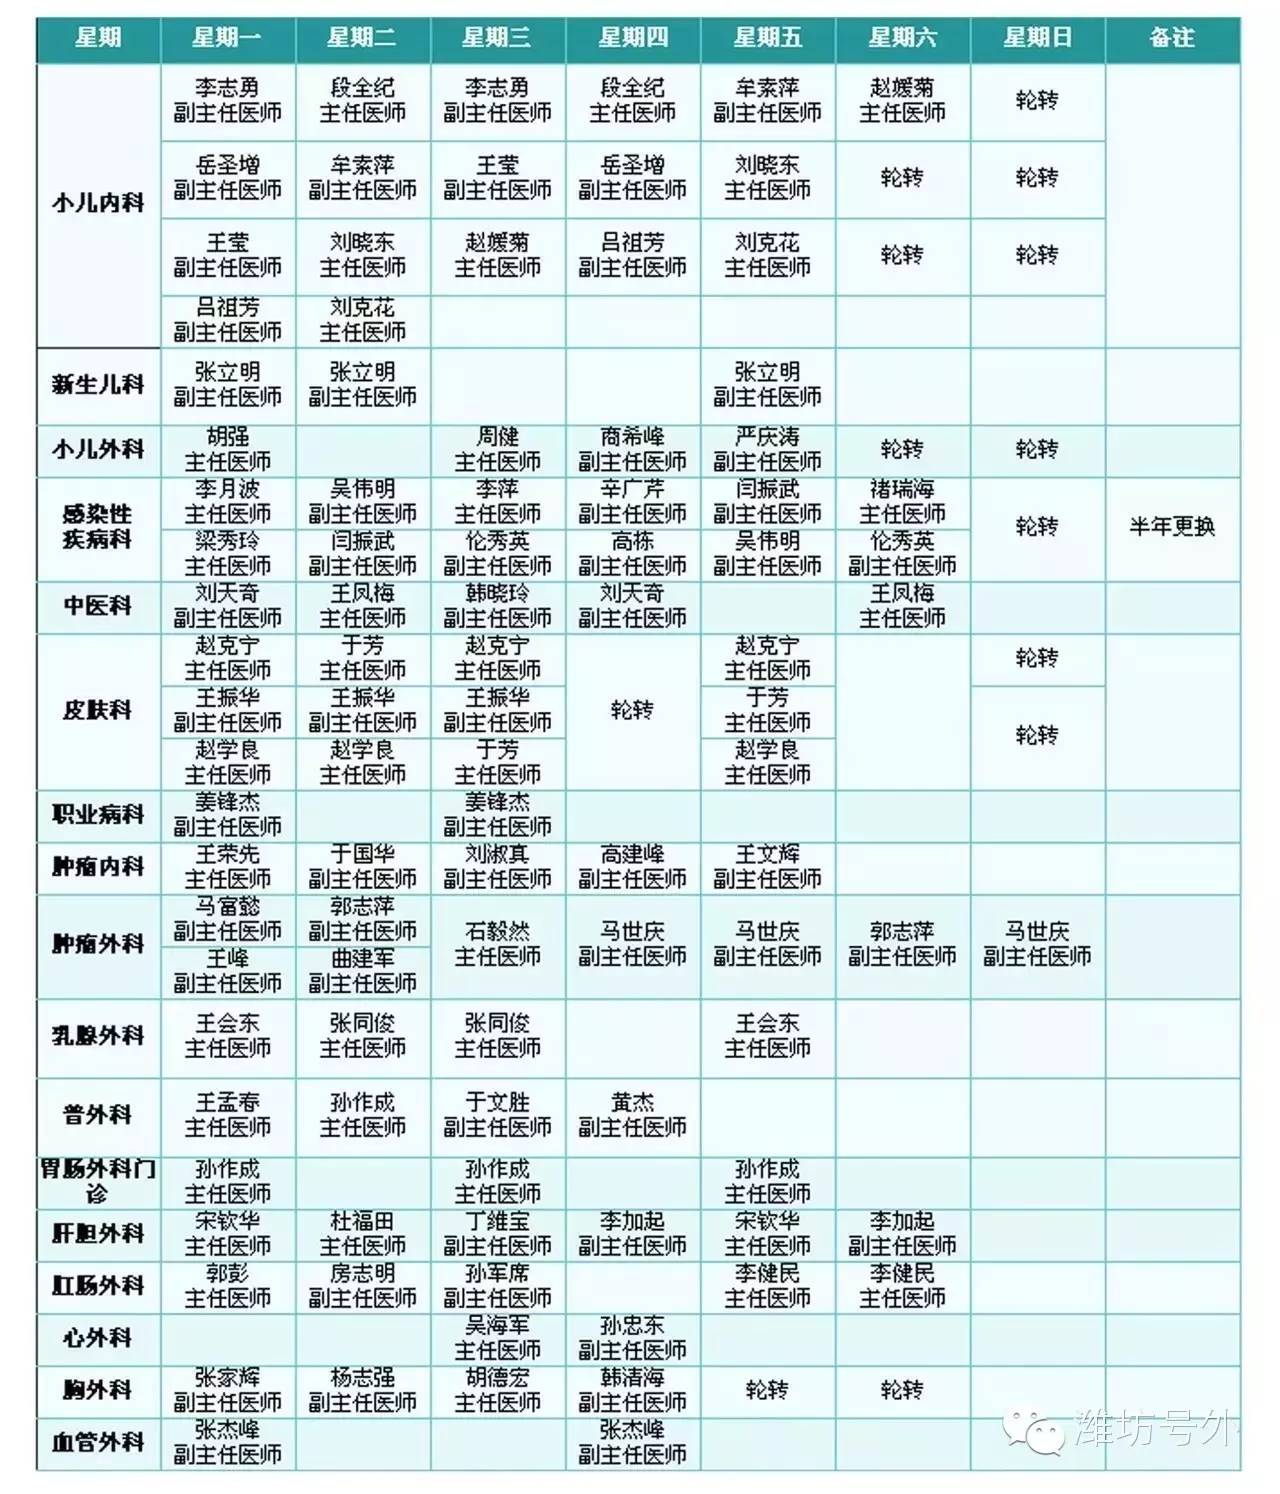 2016版,潍坊市人民医院专家门诊一览表!就医必